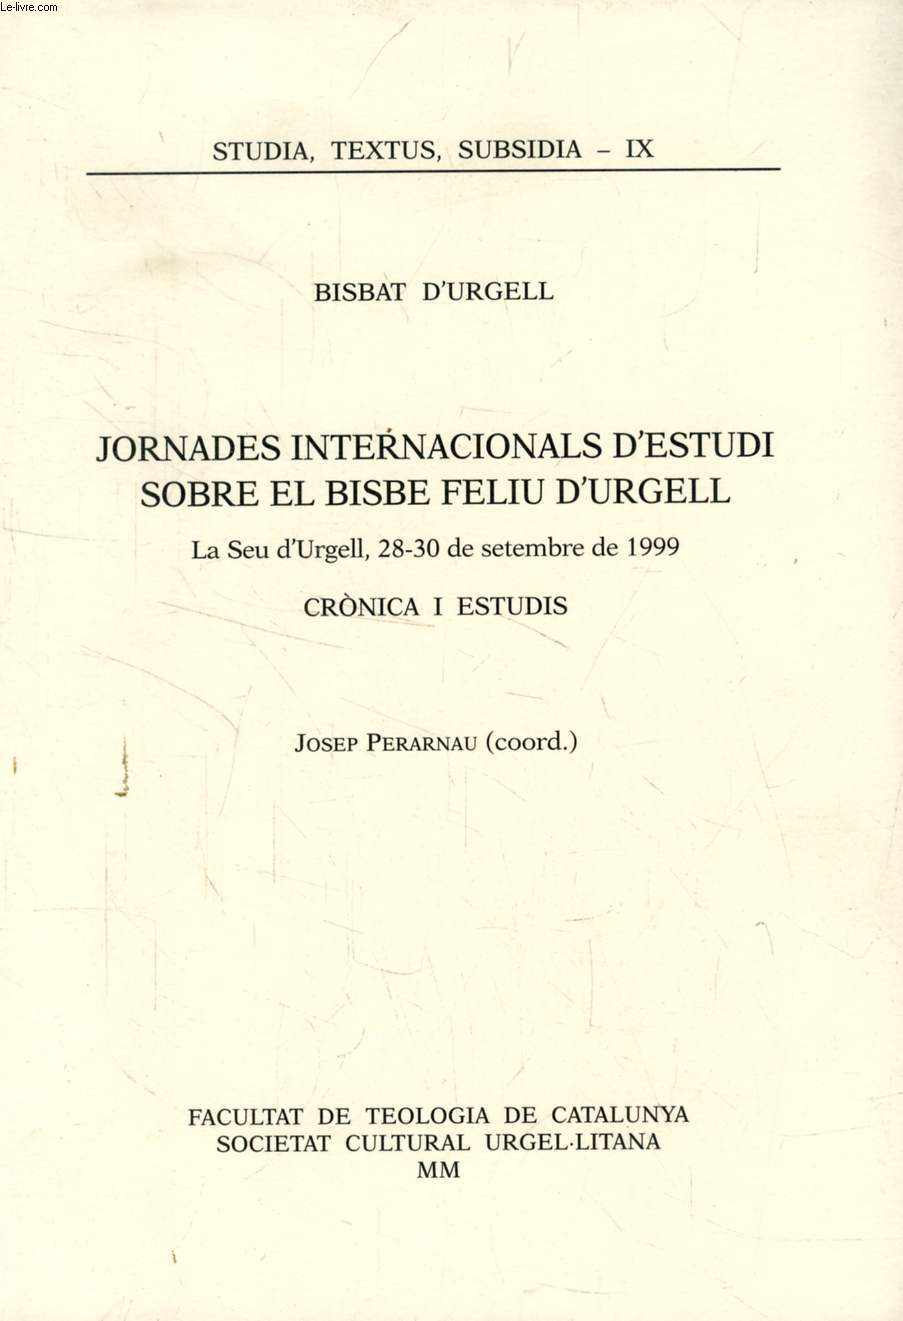 JORNADES INTERNACIONALS D'ESTUDI SOBRE EL BISBE FELIU D'URGELL, LA SEU D'URGELL, 28-30 DE SET. DE 1999, CRONICA I ESTUDIS